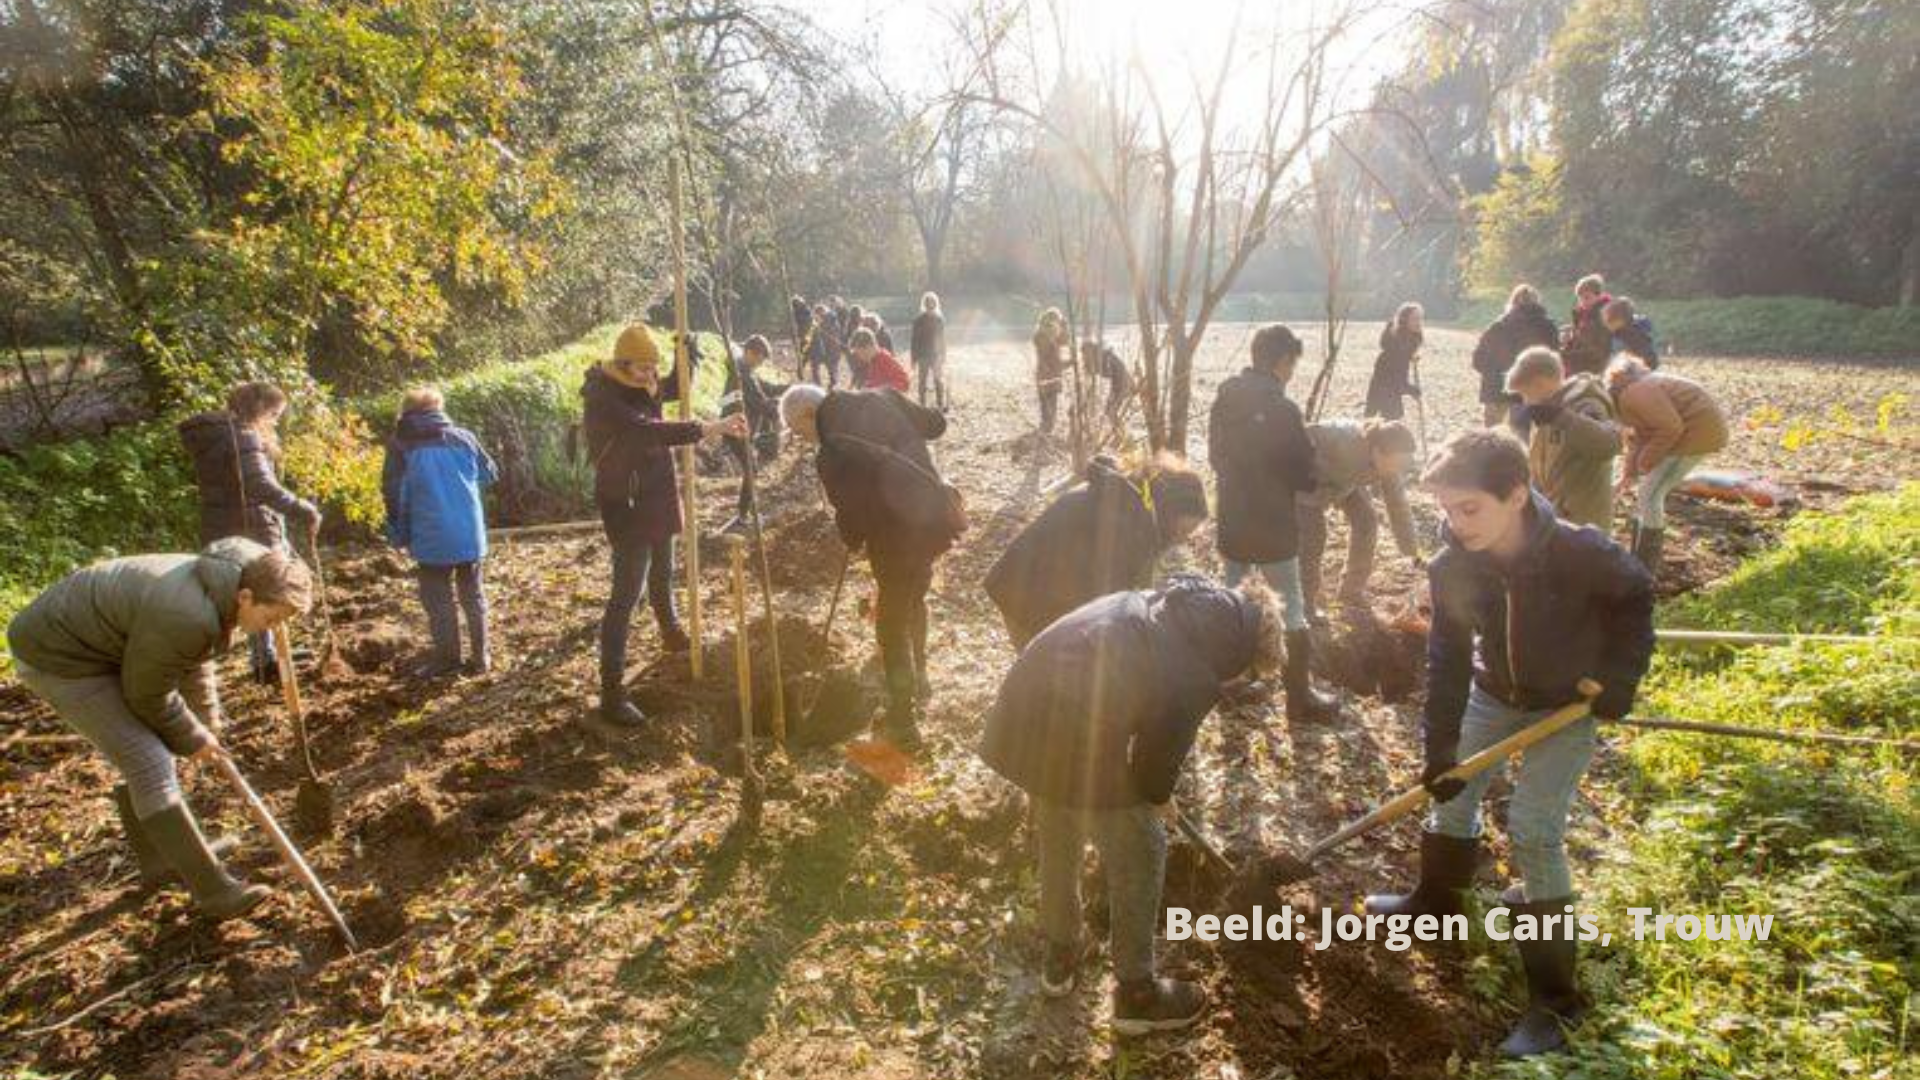 Leerlingen van de Stichtse Vrije School in Zeist helpen Sonne Copijn met het planten van bomen en struiken. Beeld: Jorgen Caris, Trouw